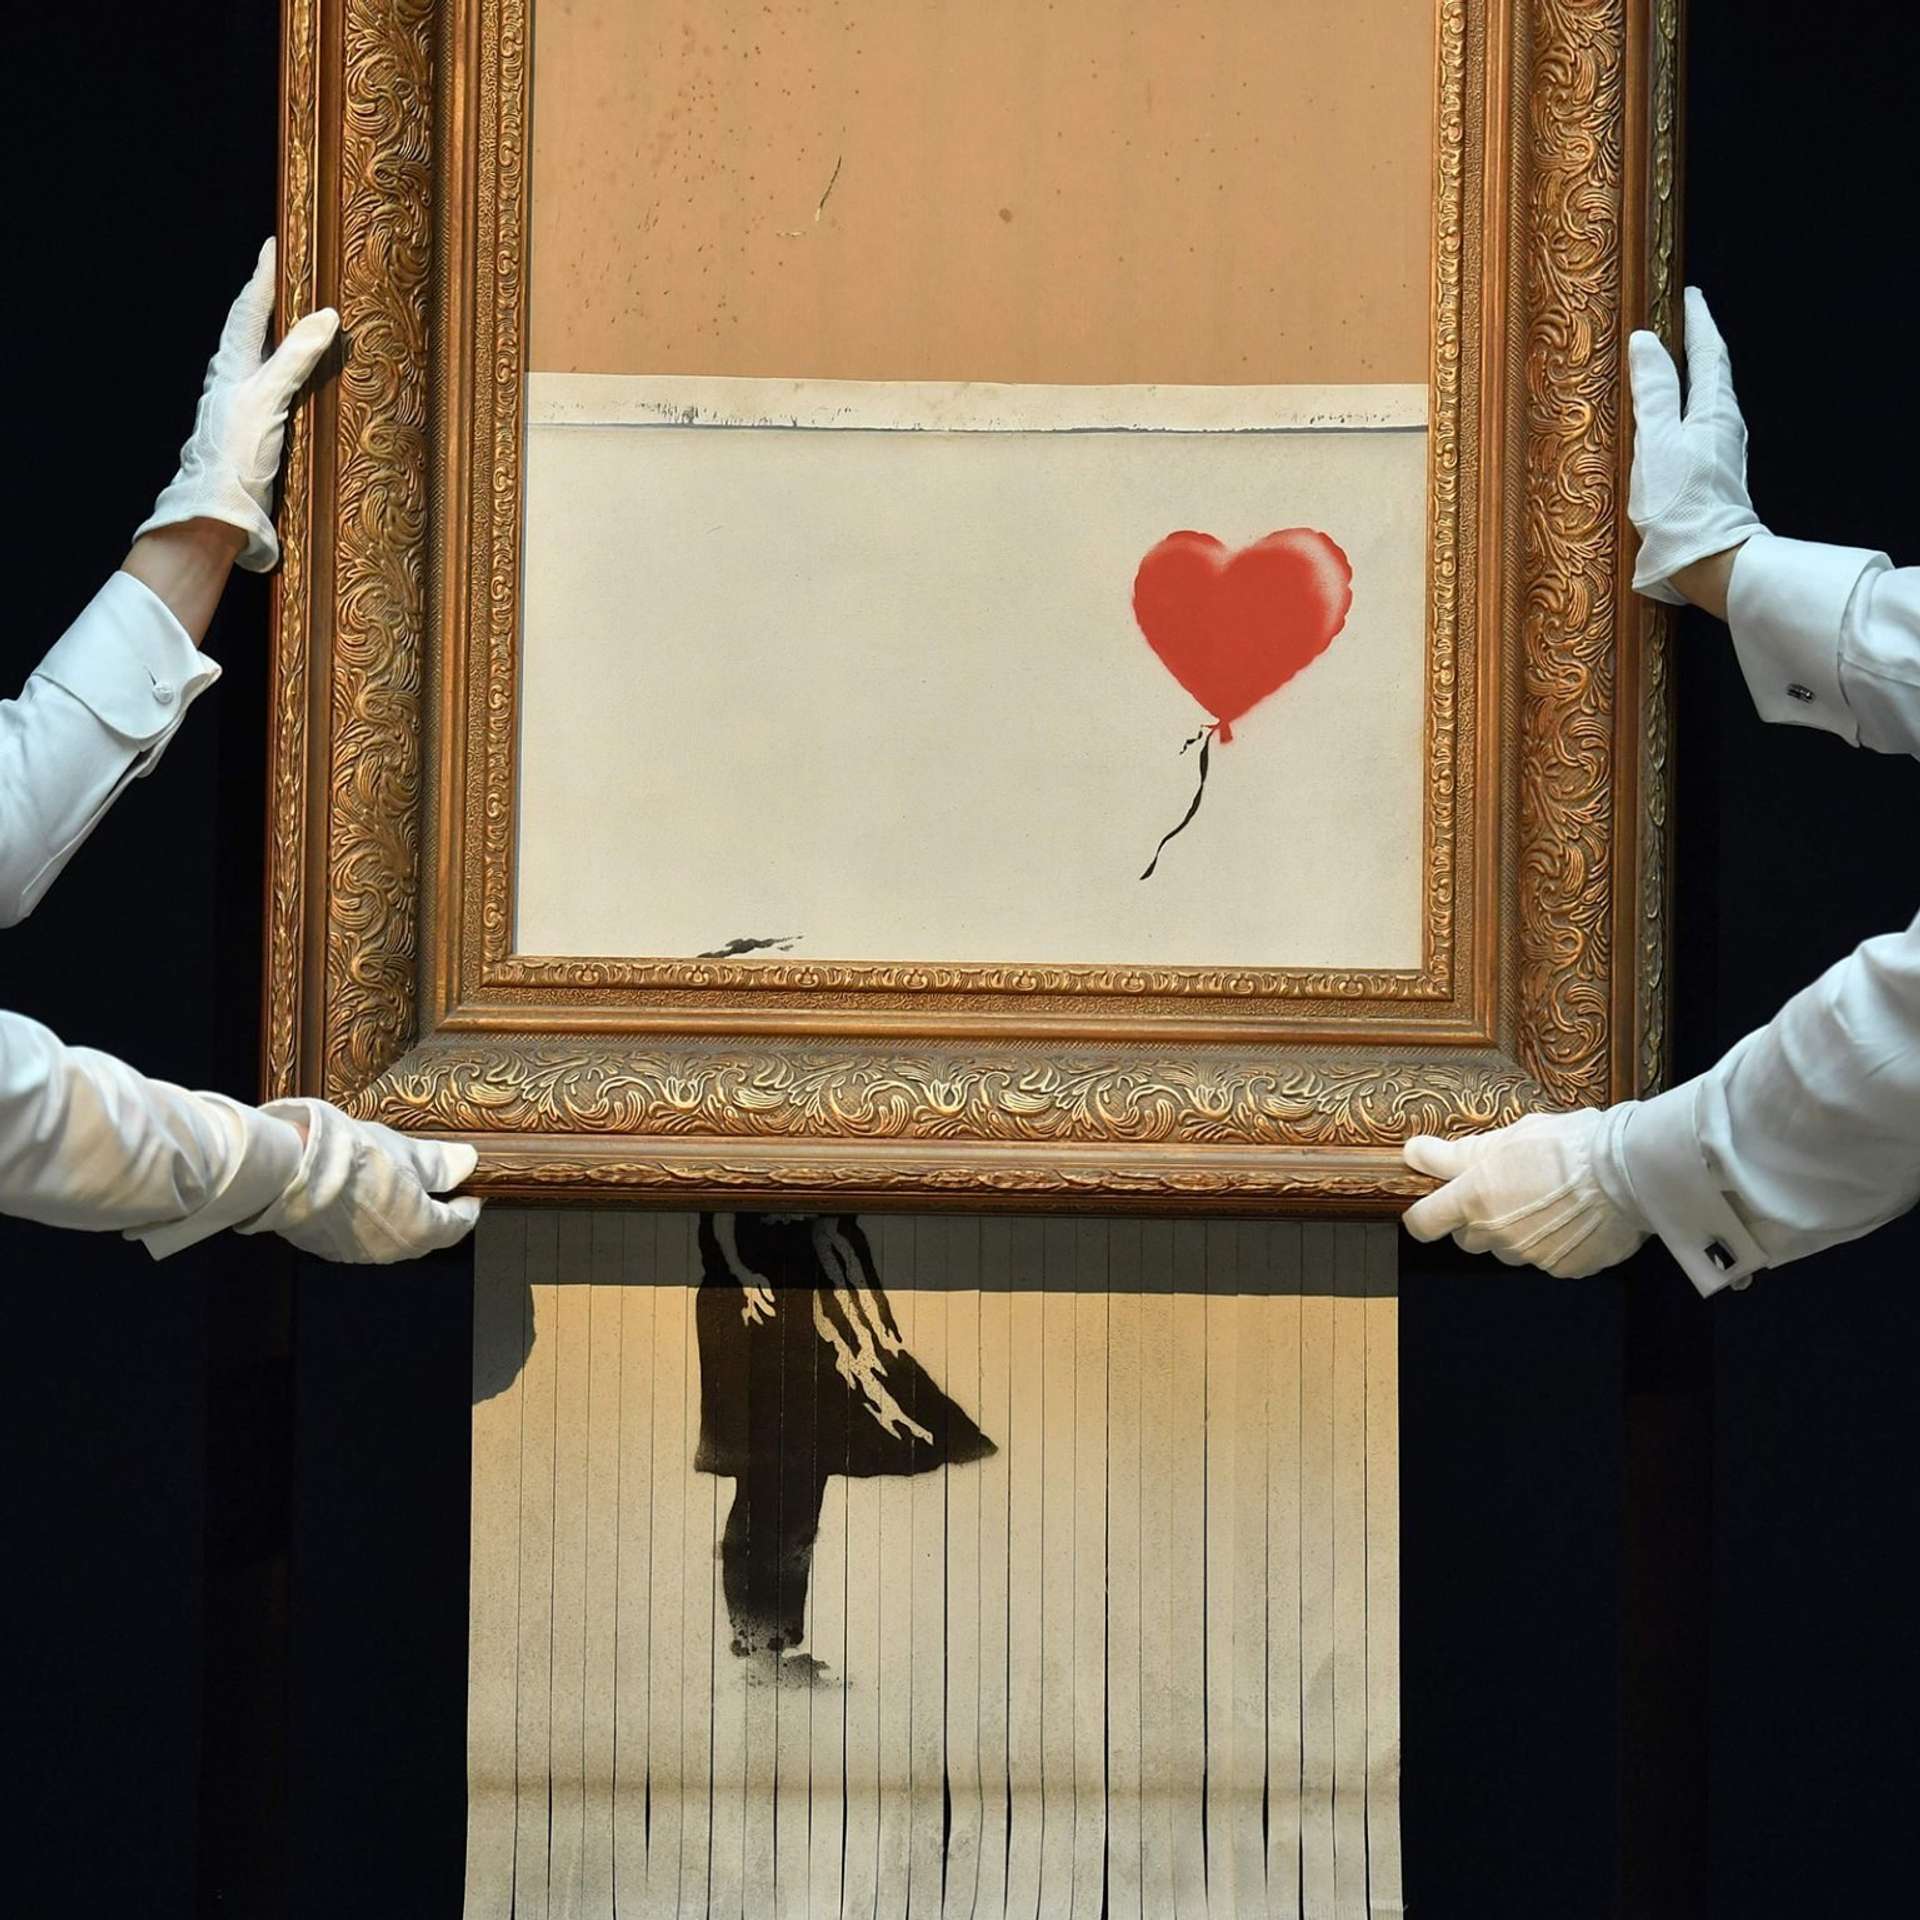 Love Is In The Bin by Banksy